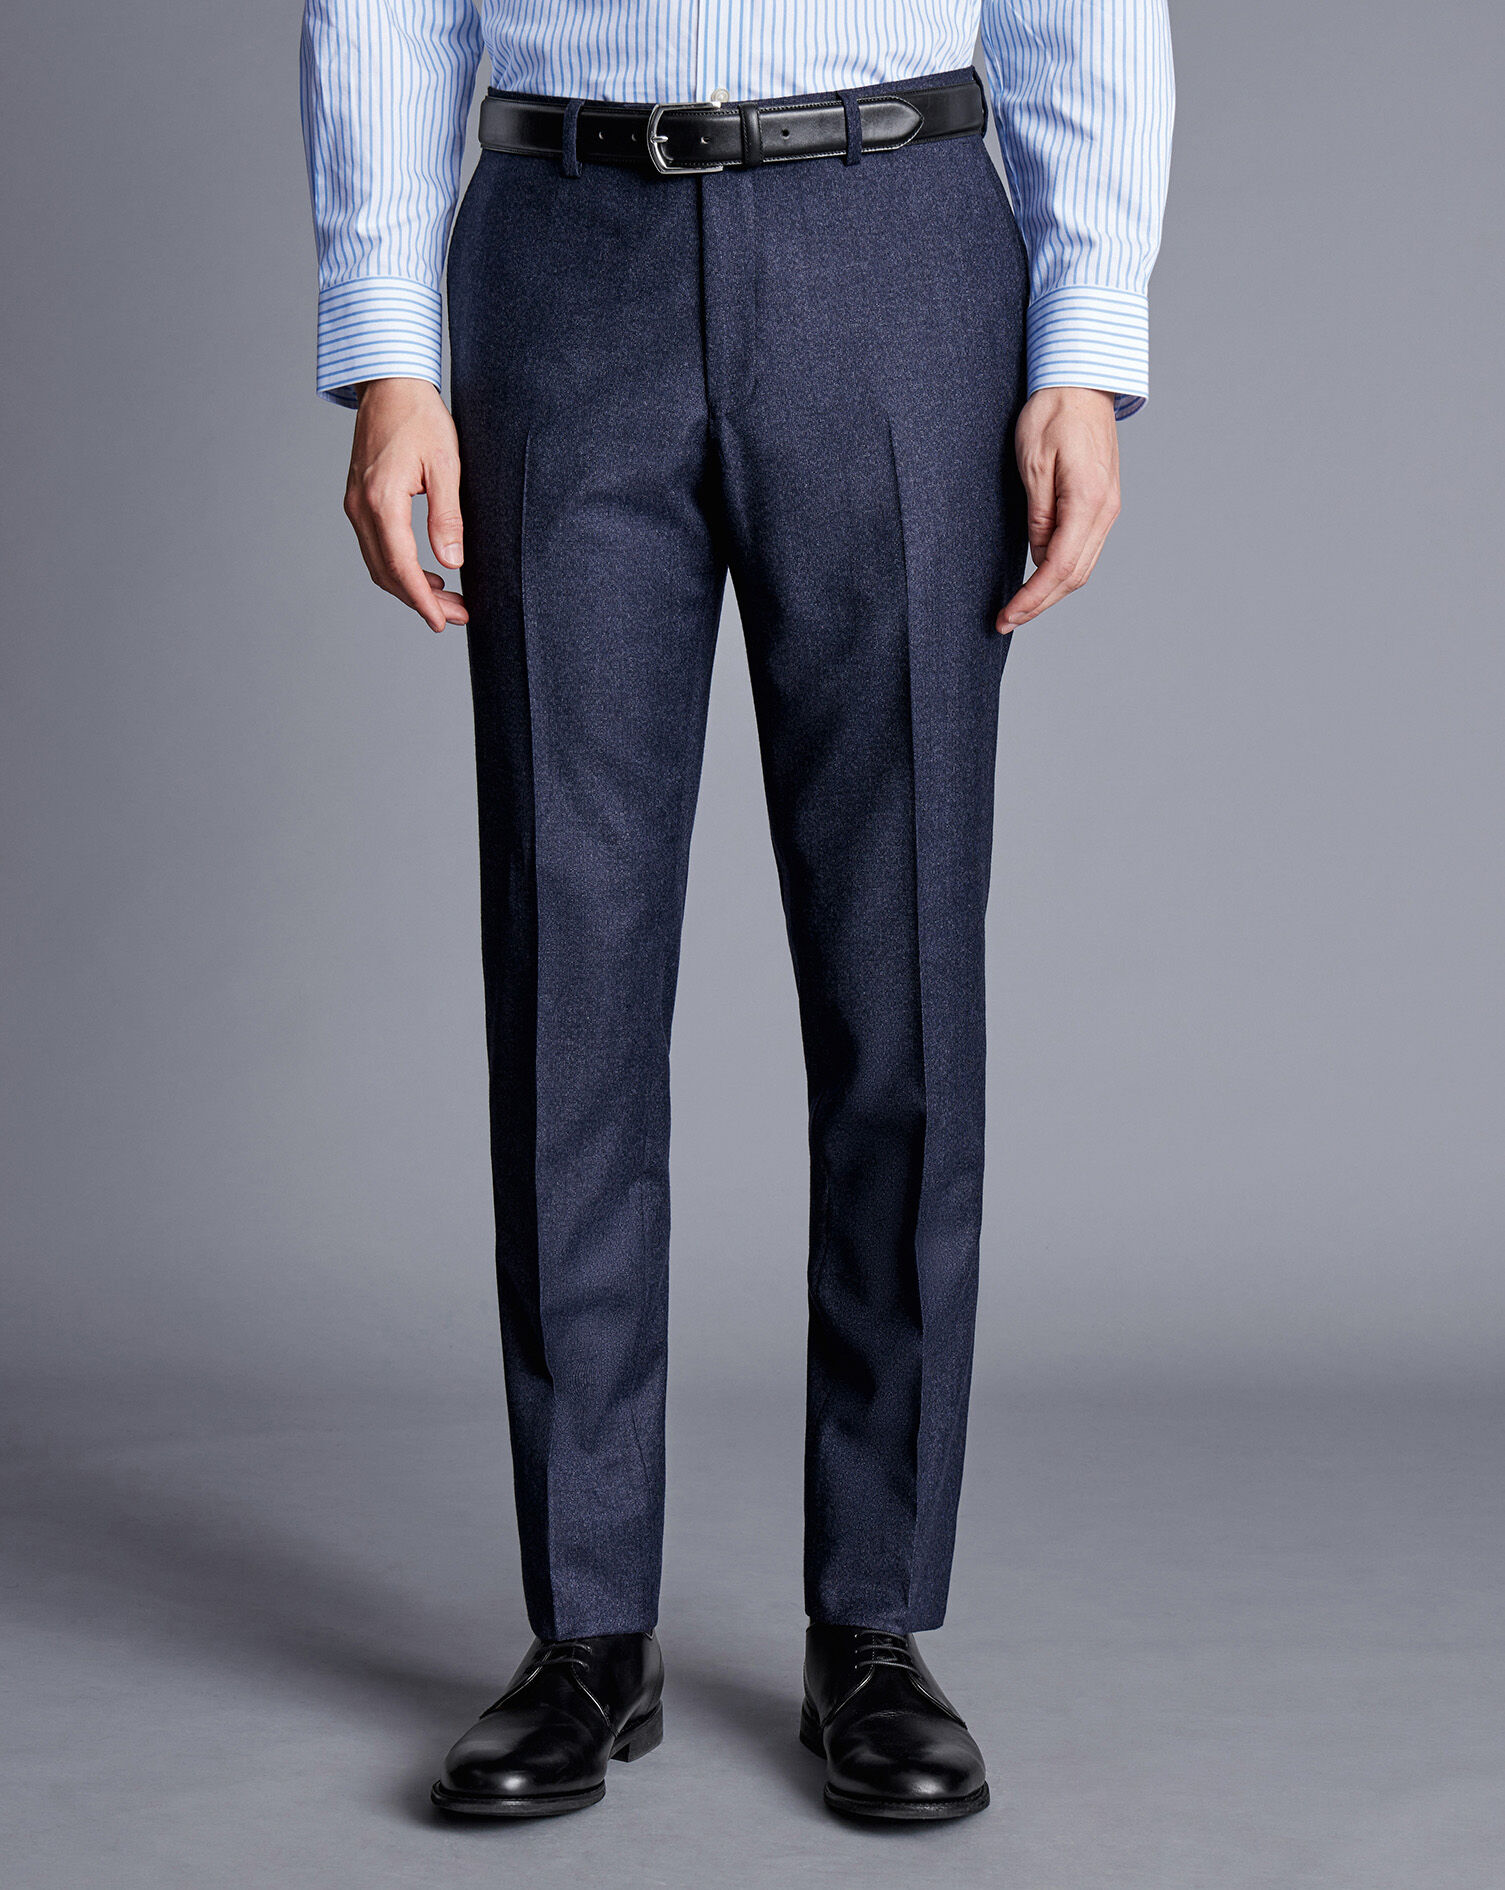 Topman Banbury Slim Fit Suit Trousers, $85 | Nordstrom | Lookastic